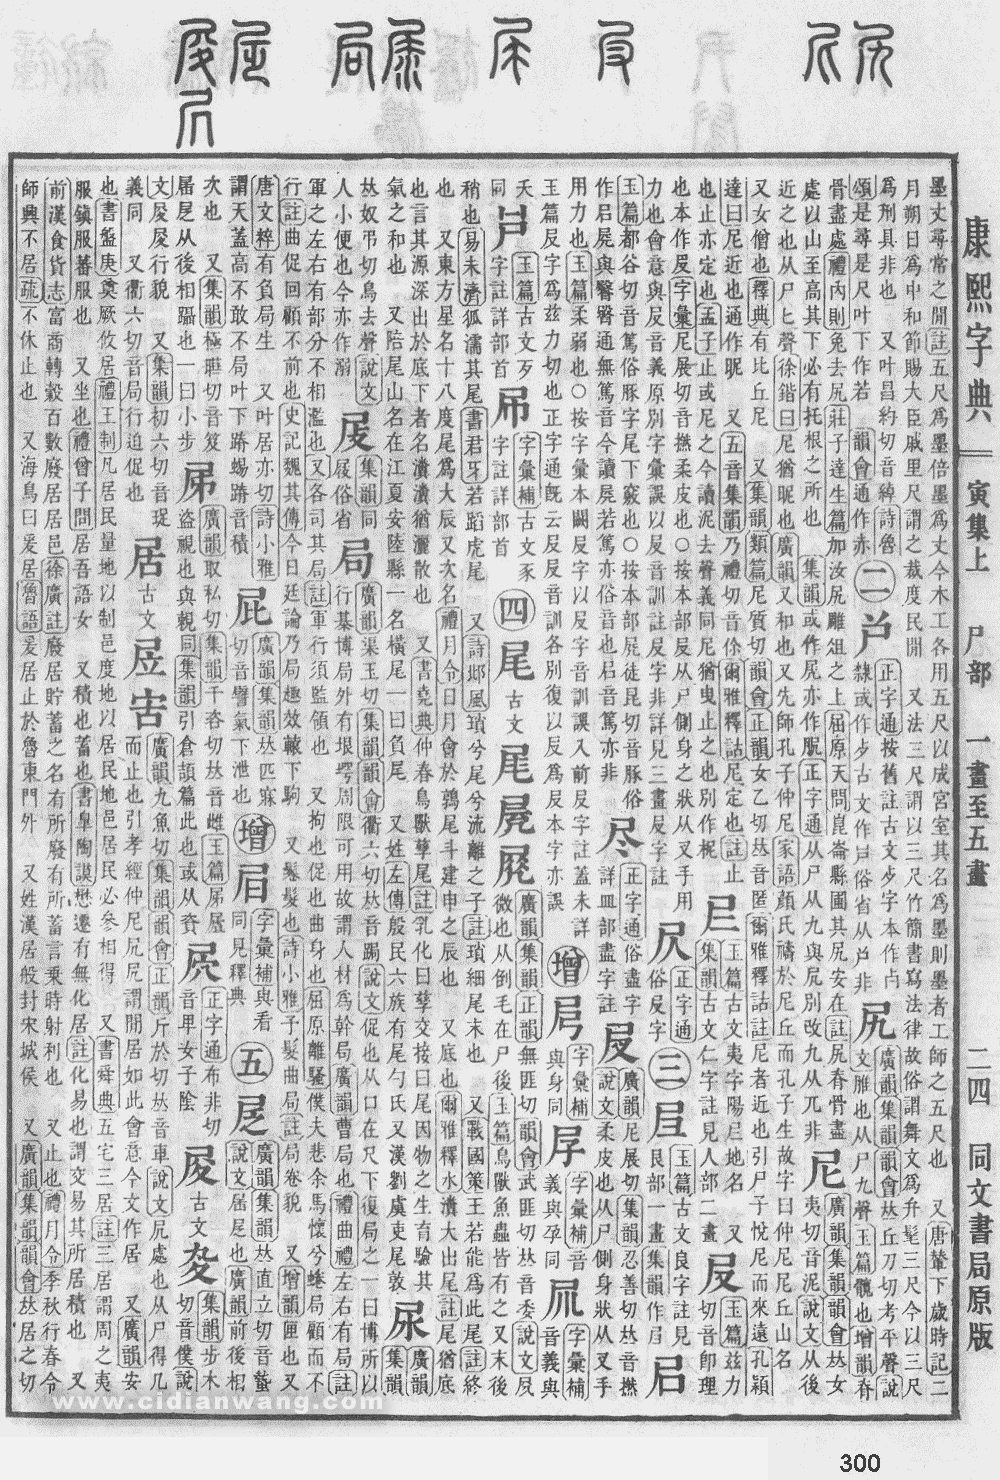 康熙字典掃描版第300頁